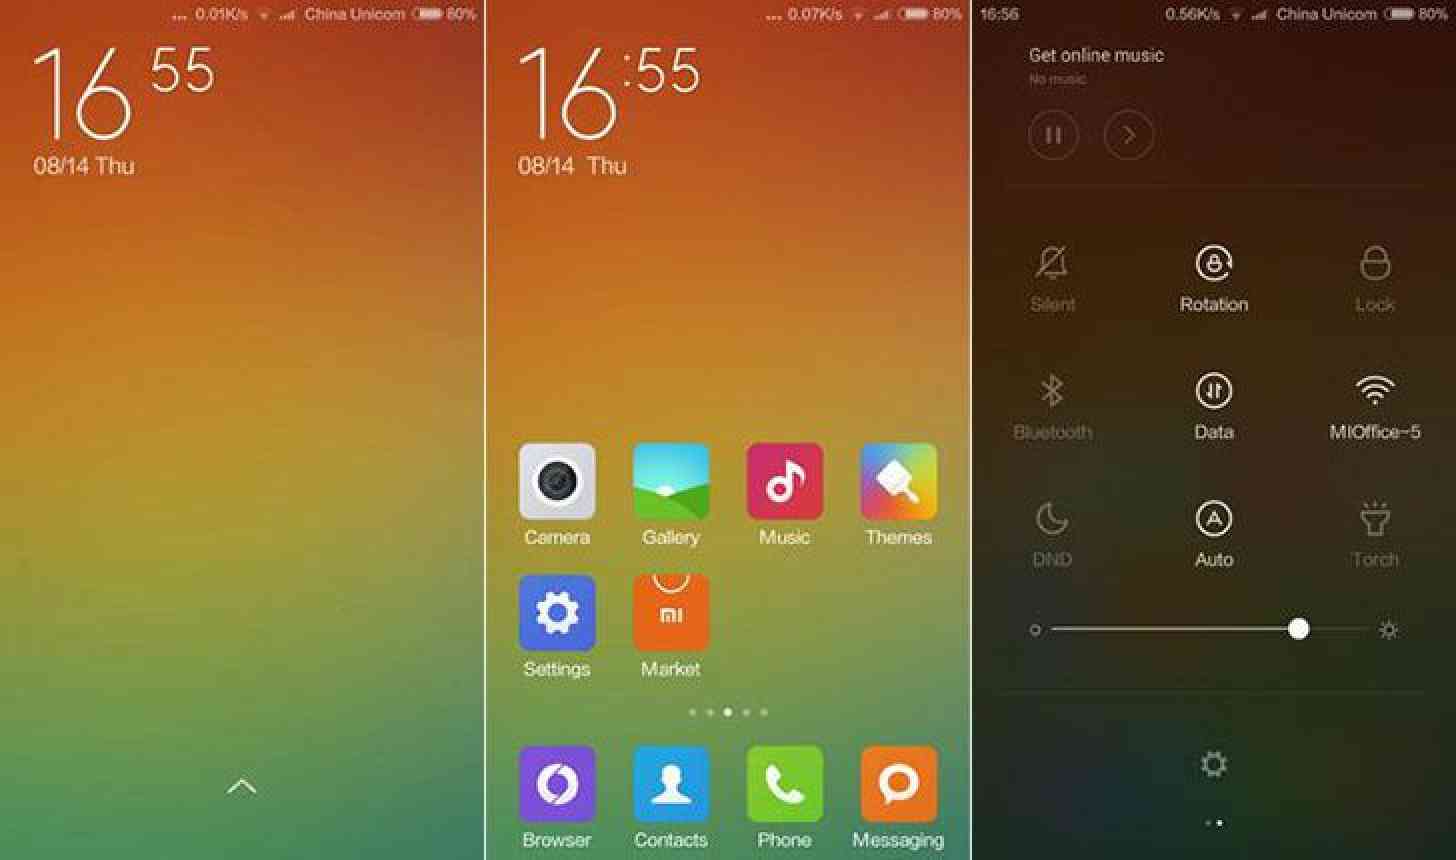 Xiaomi Miui 6 screenshots